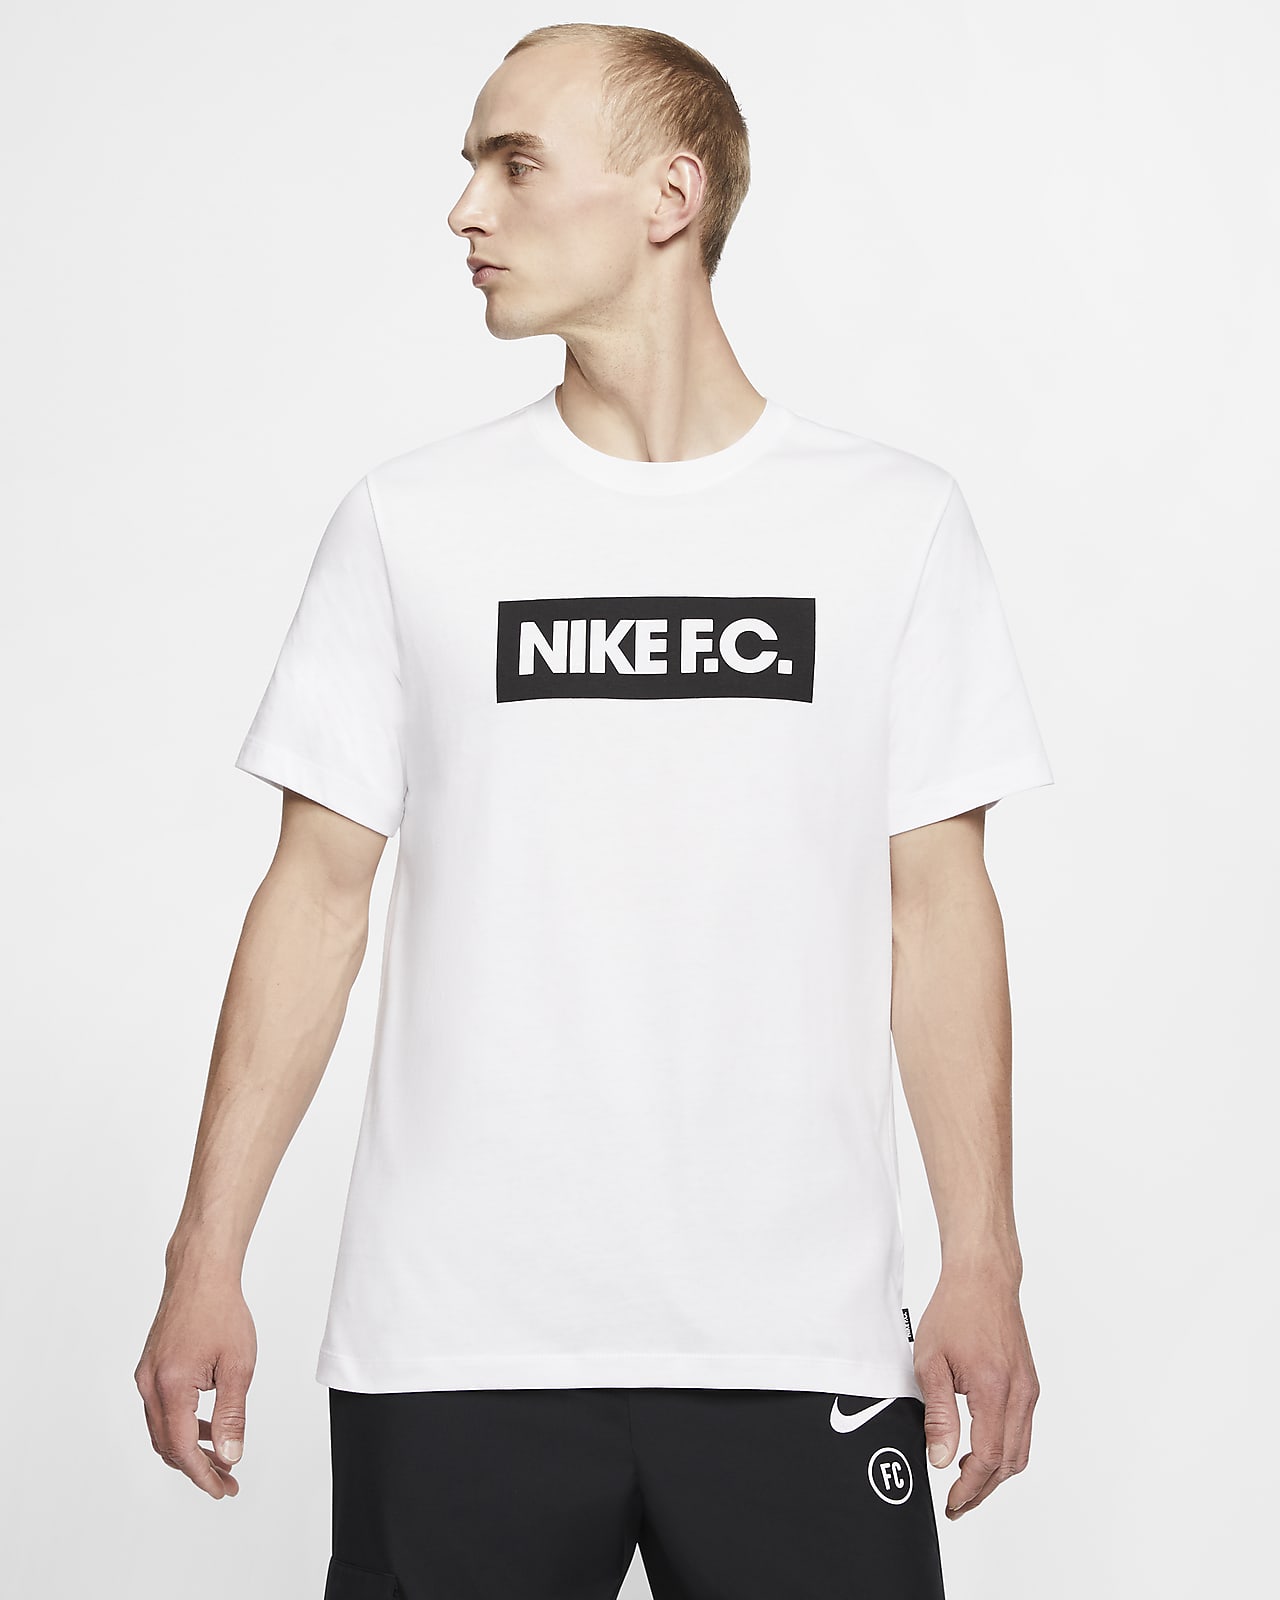 Nike F.C. SE11 Men's Football T-Shirt